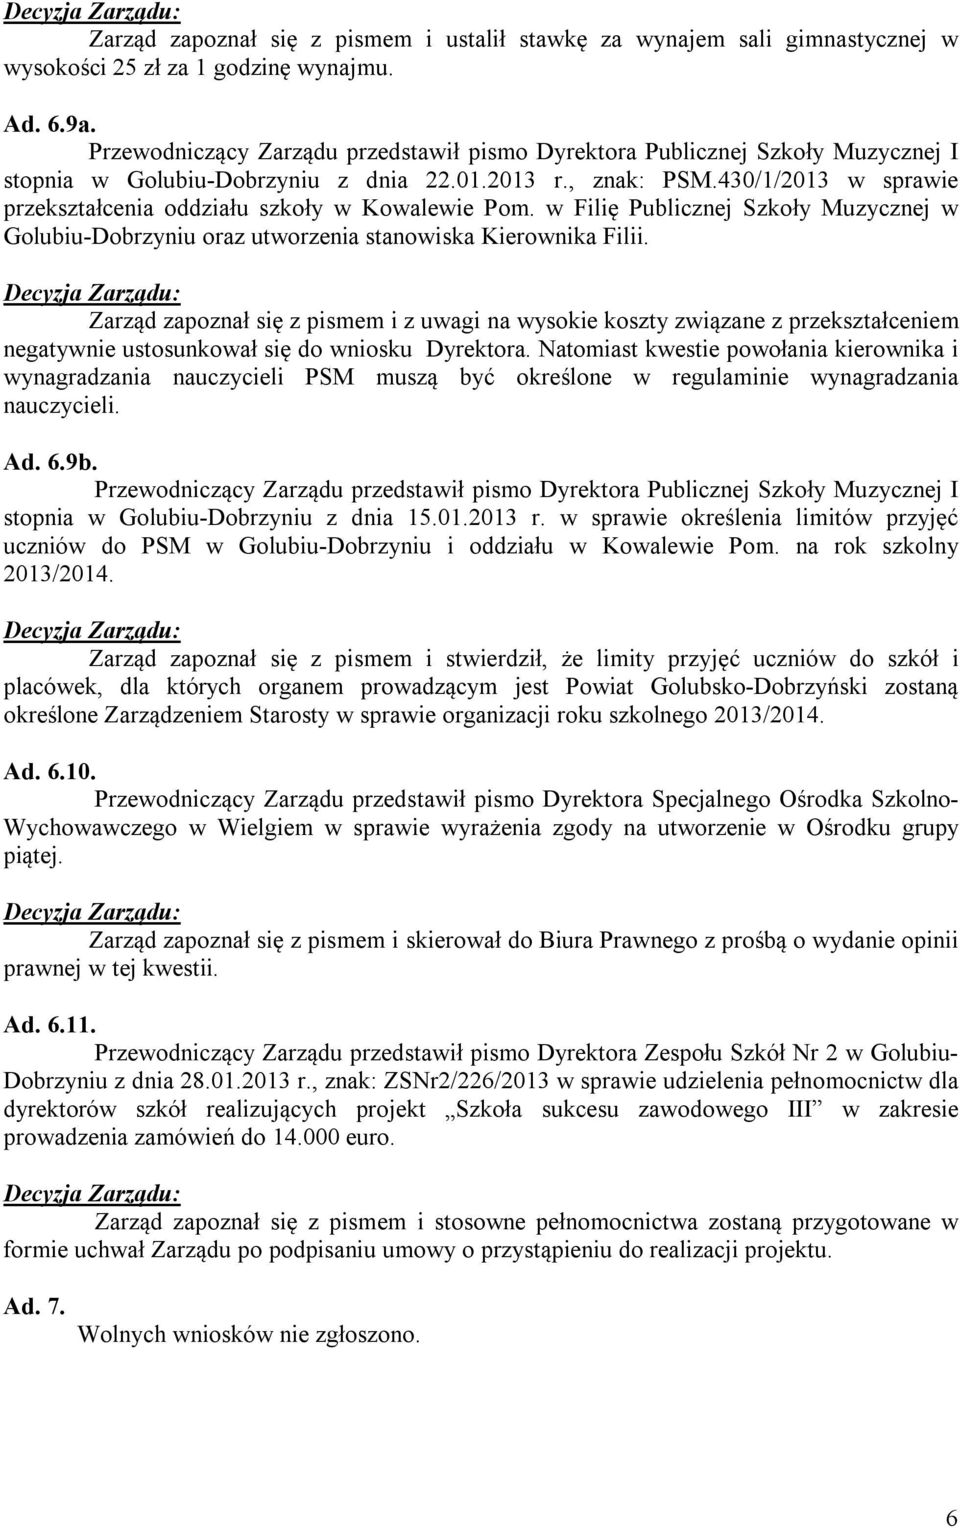 430/1/2013 w sprawie przekształcenia oddziału szkoły w Kowalewie Pom. w Filię Publicznej Szkoły Muzycznej w Golubiu-Dobrzyniu oraz utworzenia stanowiska Kierownika Filii.